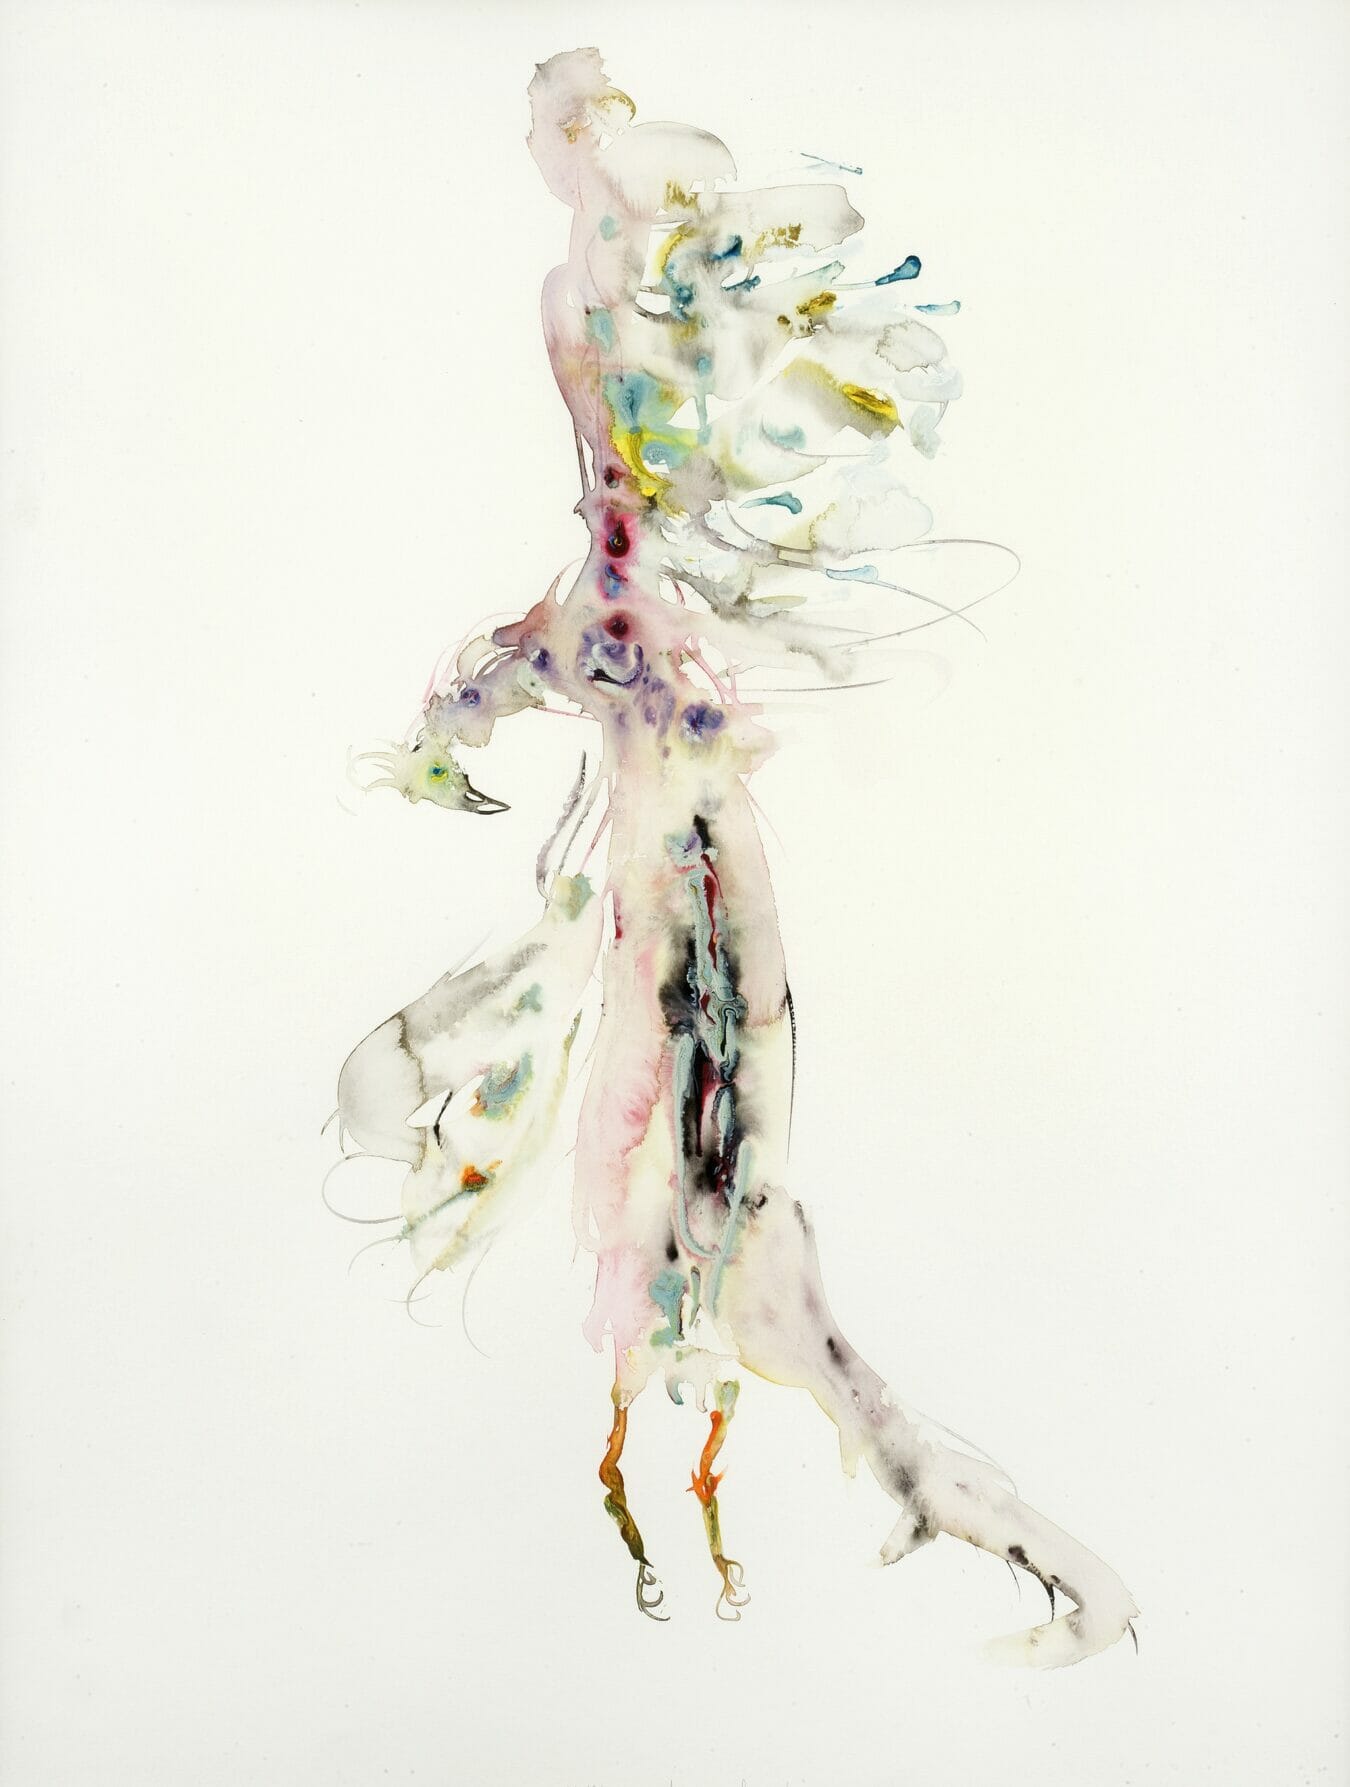 Gehangen fazant, 2000, watercolor, 100 x 70 cm, LUMC Kunstcollectie